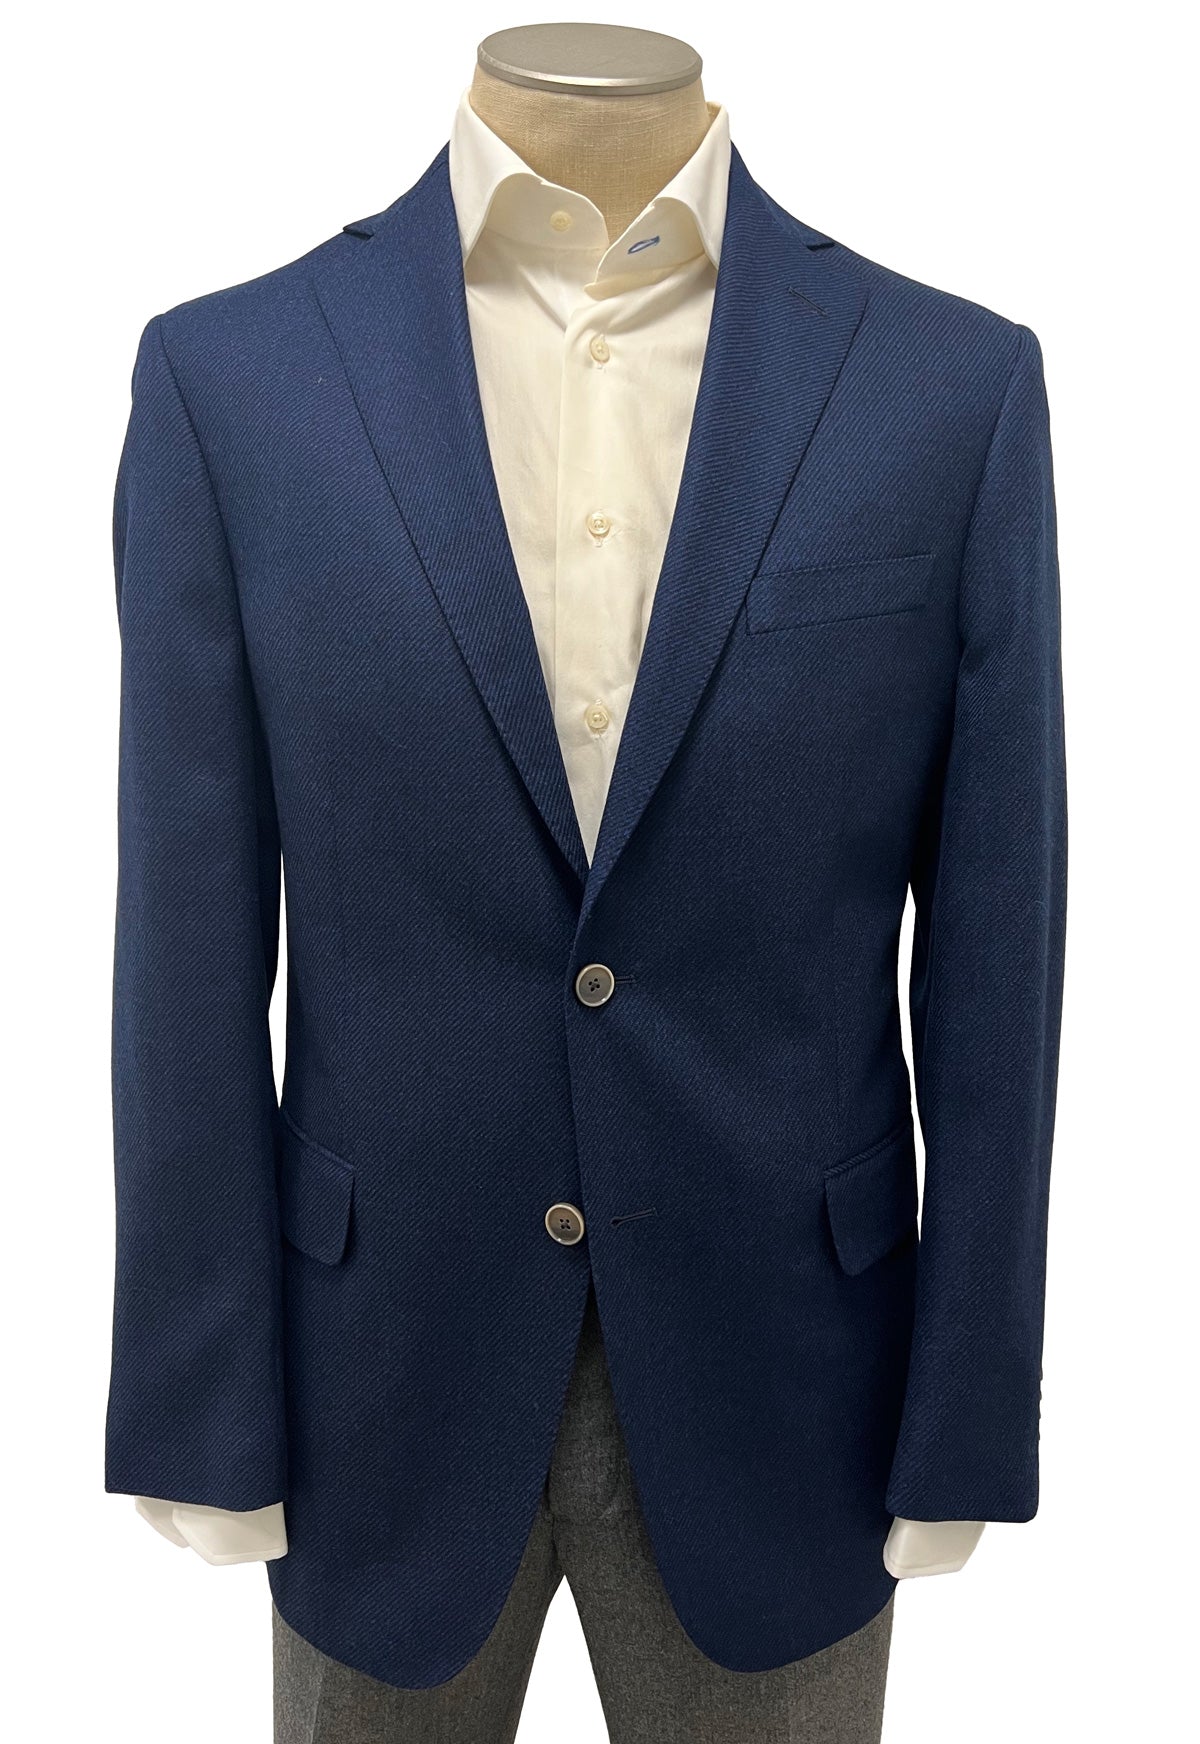 Men's Sport Coat Modern Cut - BLUE - 70/30 WOOL/AIRWOOL